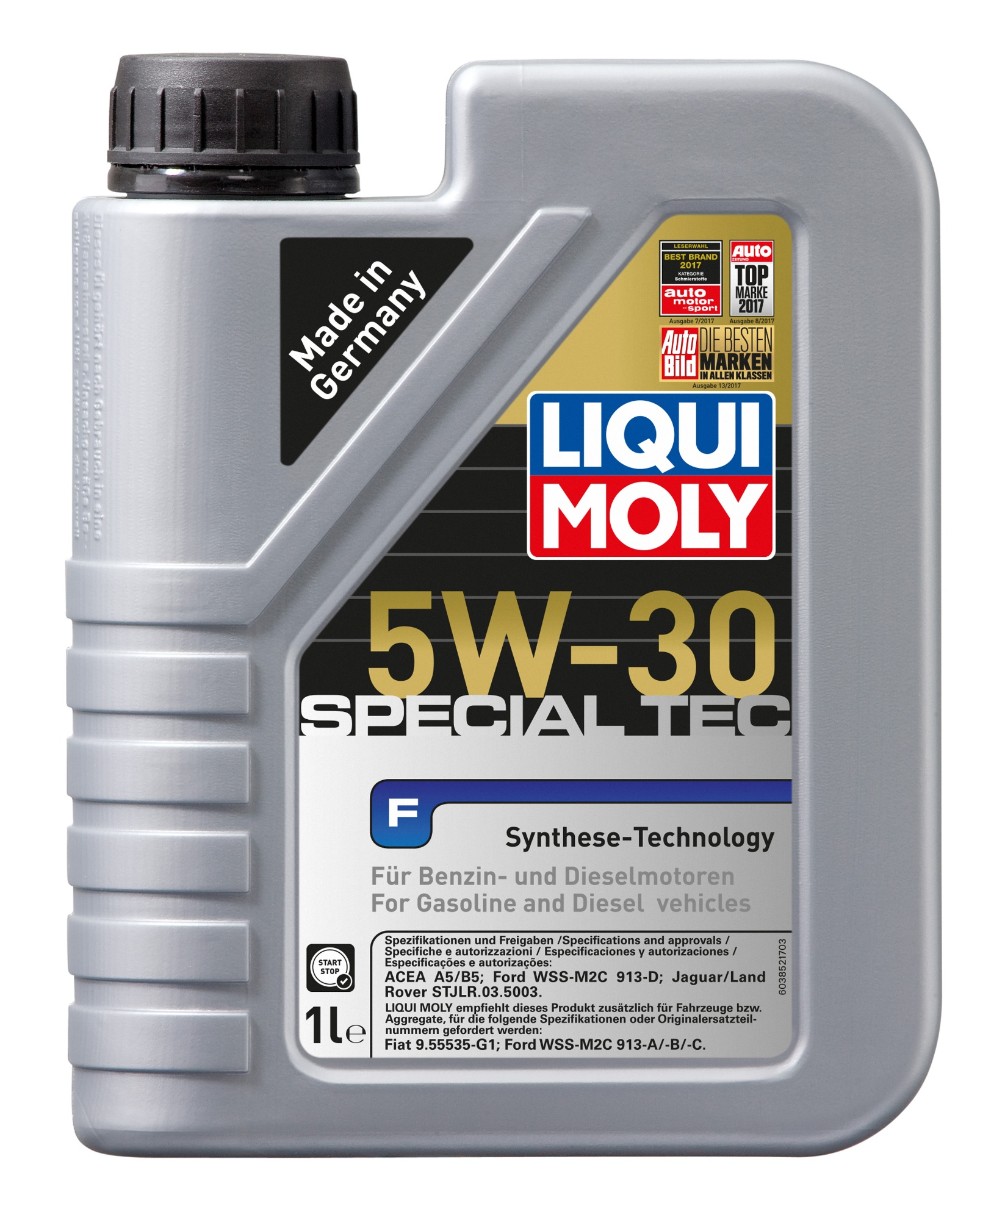 Моторное масло Liqui Moly Special Tec F 5W-30 1L